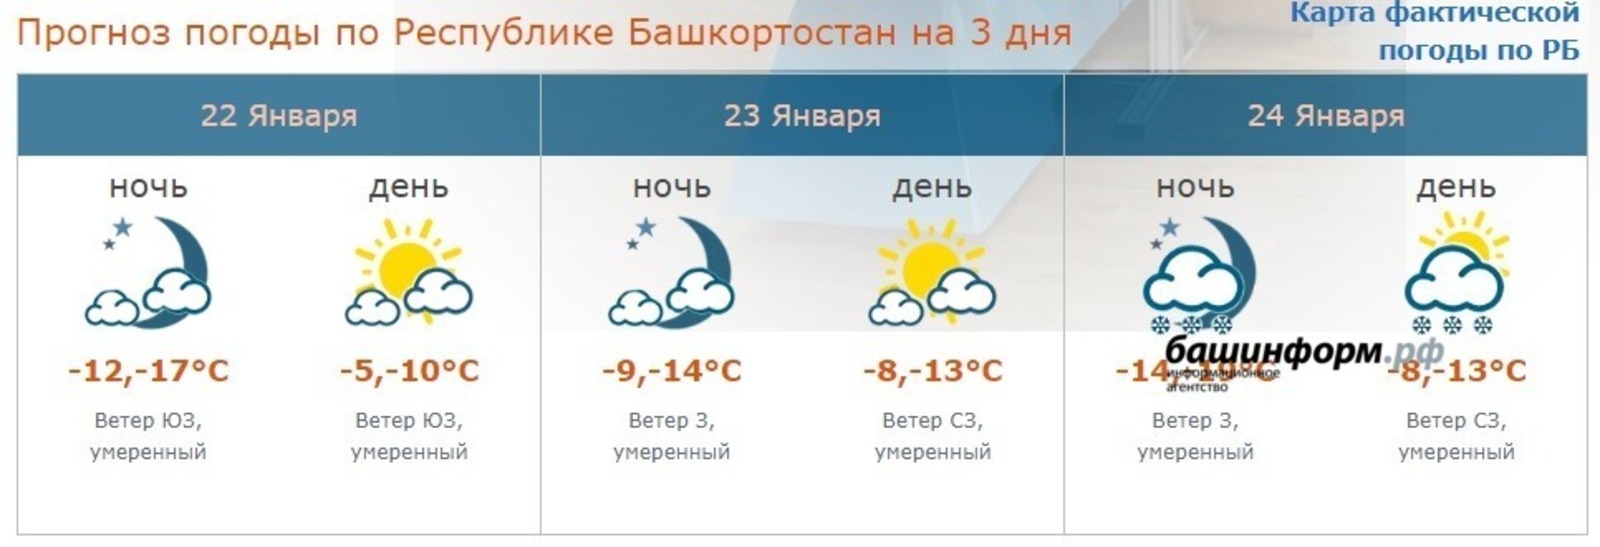 В Башкирии в начале недели температура воздуха местами составит -29 градусов